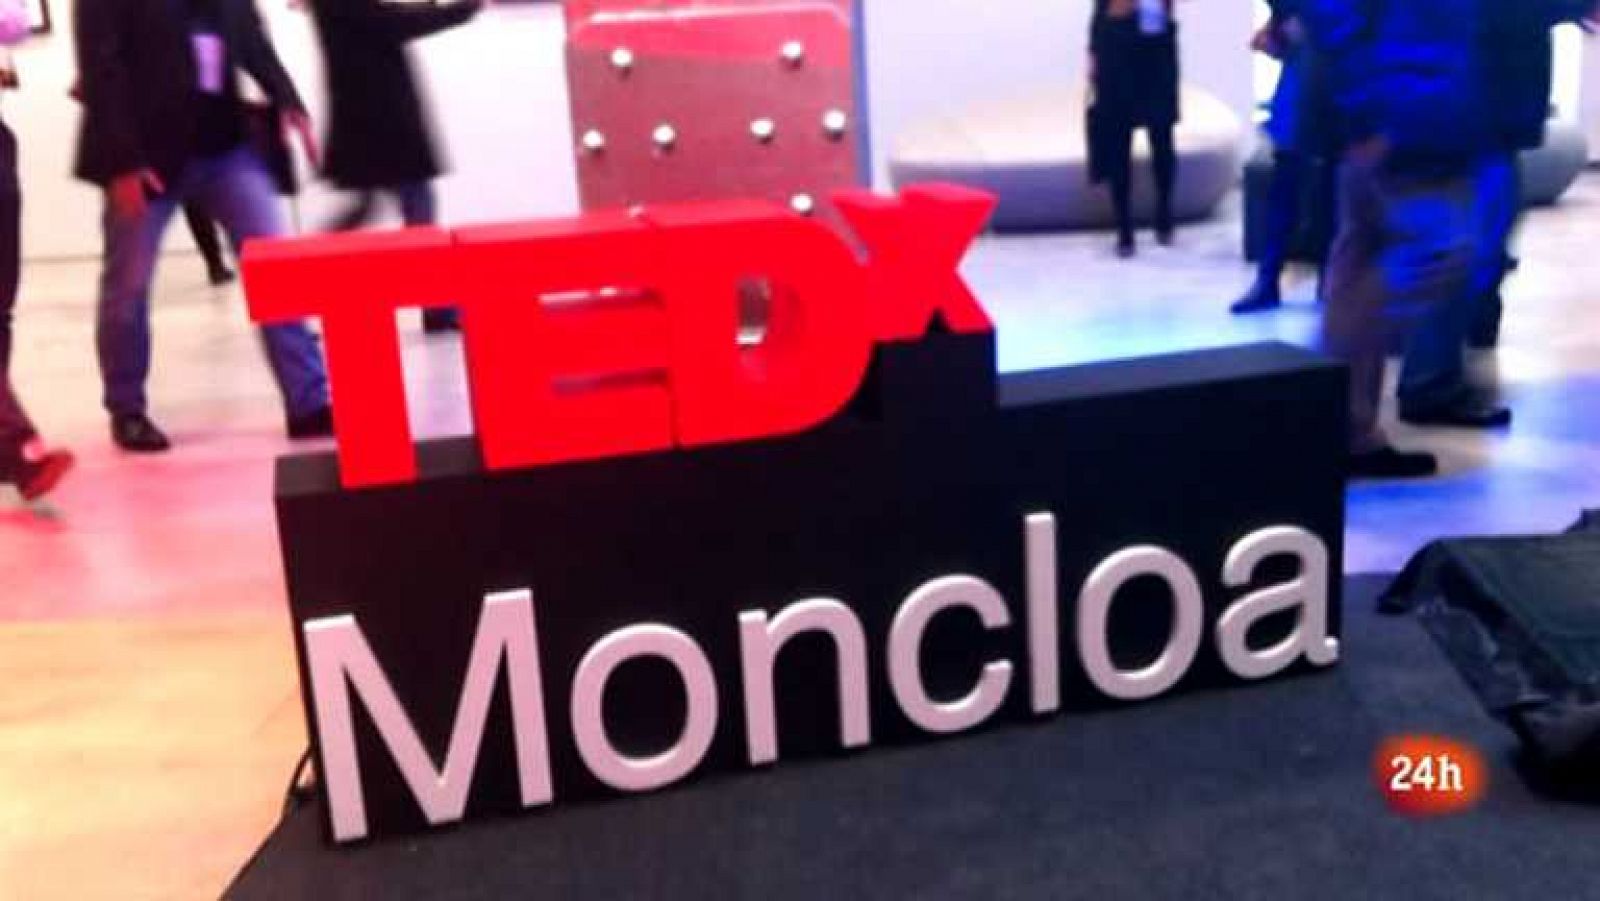 Cámara abierta 2.0 - TEDx Moncloa; Pigafe.com; la red social Esperanzae.com; José Mercé en 1minutoCOM - 24/11/12